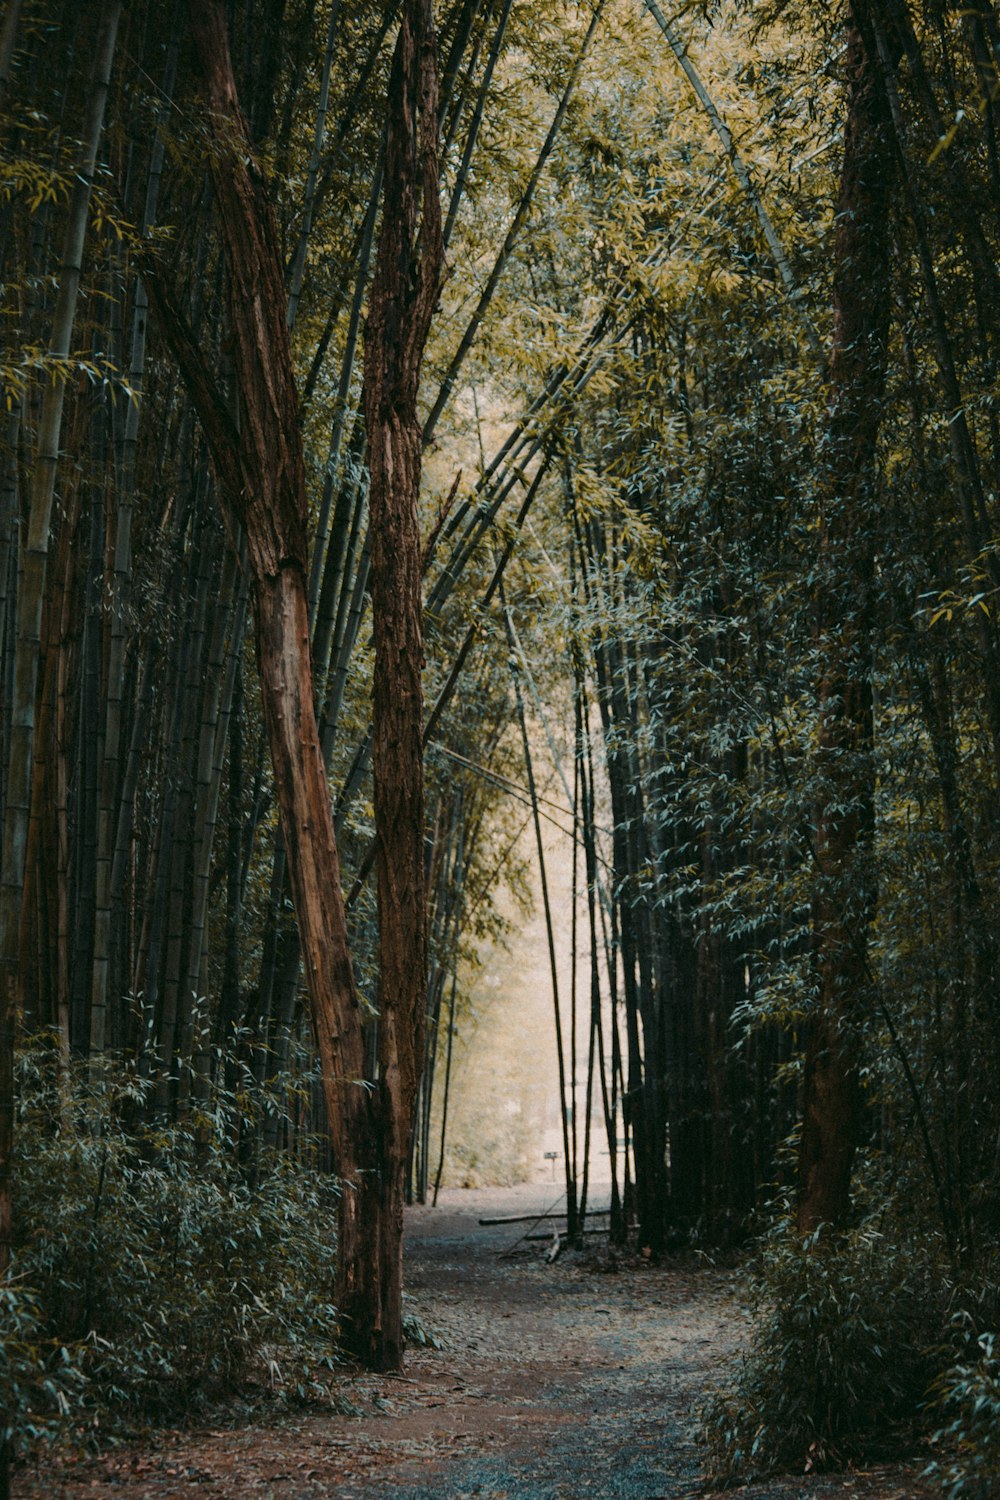 una strada sterrata circondata da alberi ad alto fusto e verde